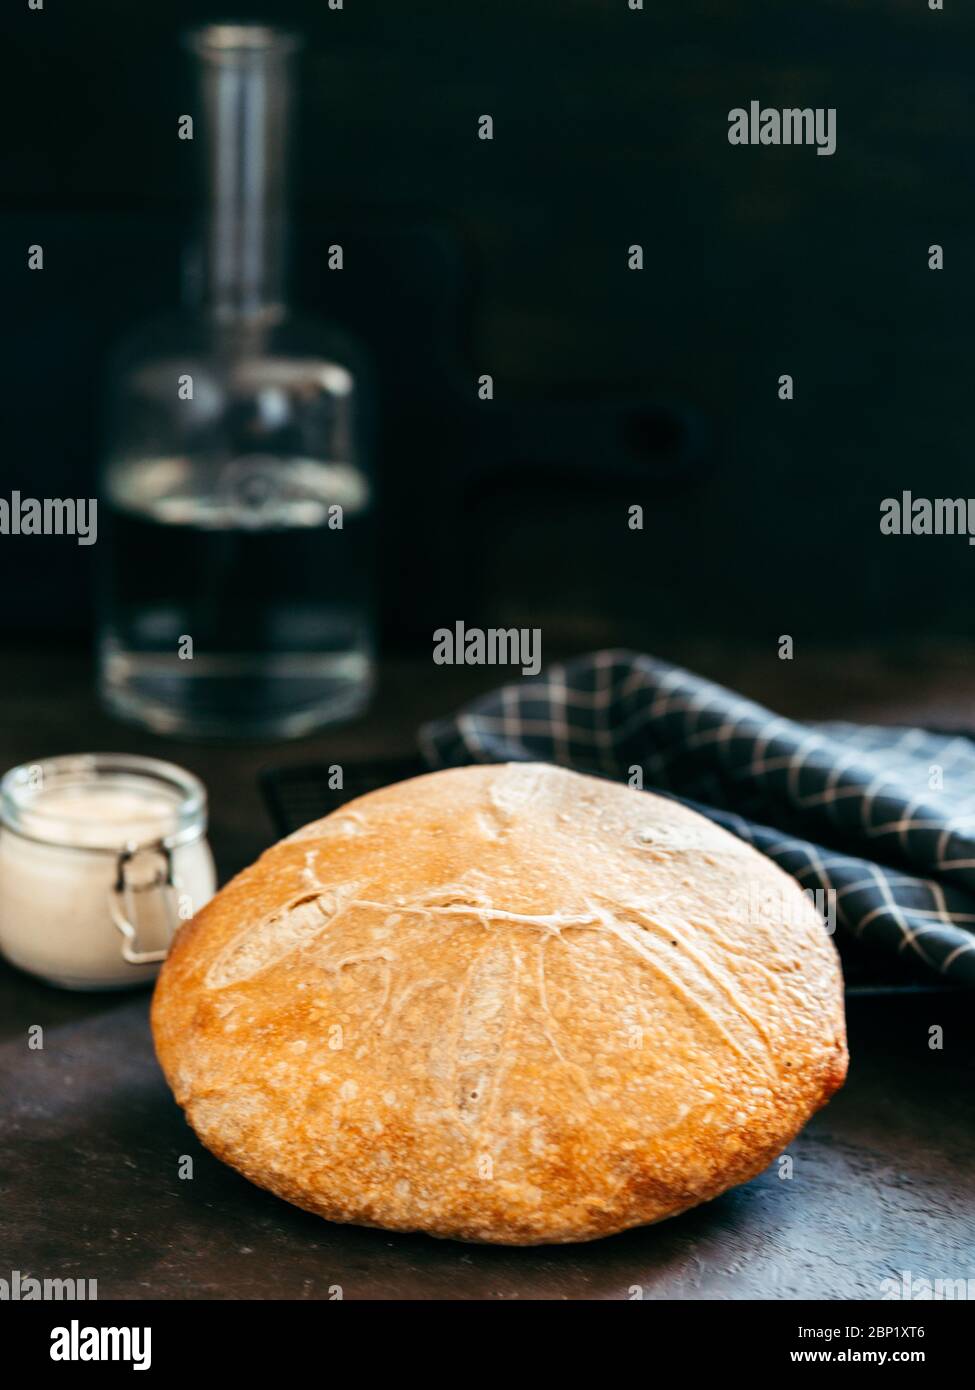 Weizenrunder Sauerteig Brot und Sauerteigstarter im Glasgefäß. Seitenansicht von köstlichen hausgemachten Sauerteig Brot auf schwarzem Hintergrund mit Kopierraum. Hausgemachtes Sauerteig Brot machen Konzept. Vertikal. Stockfoto